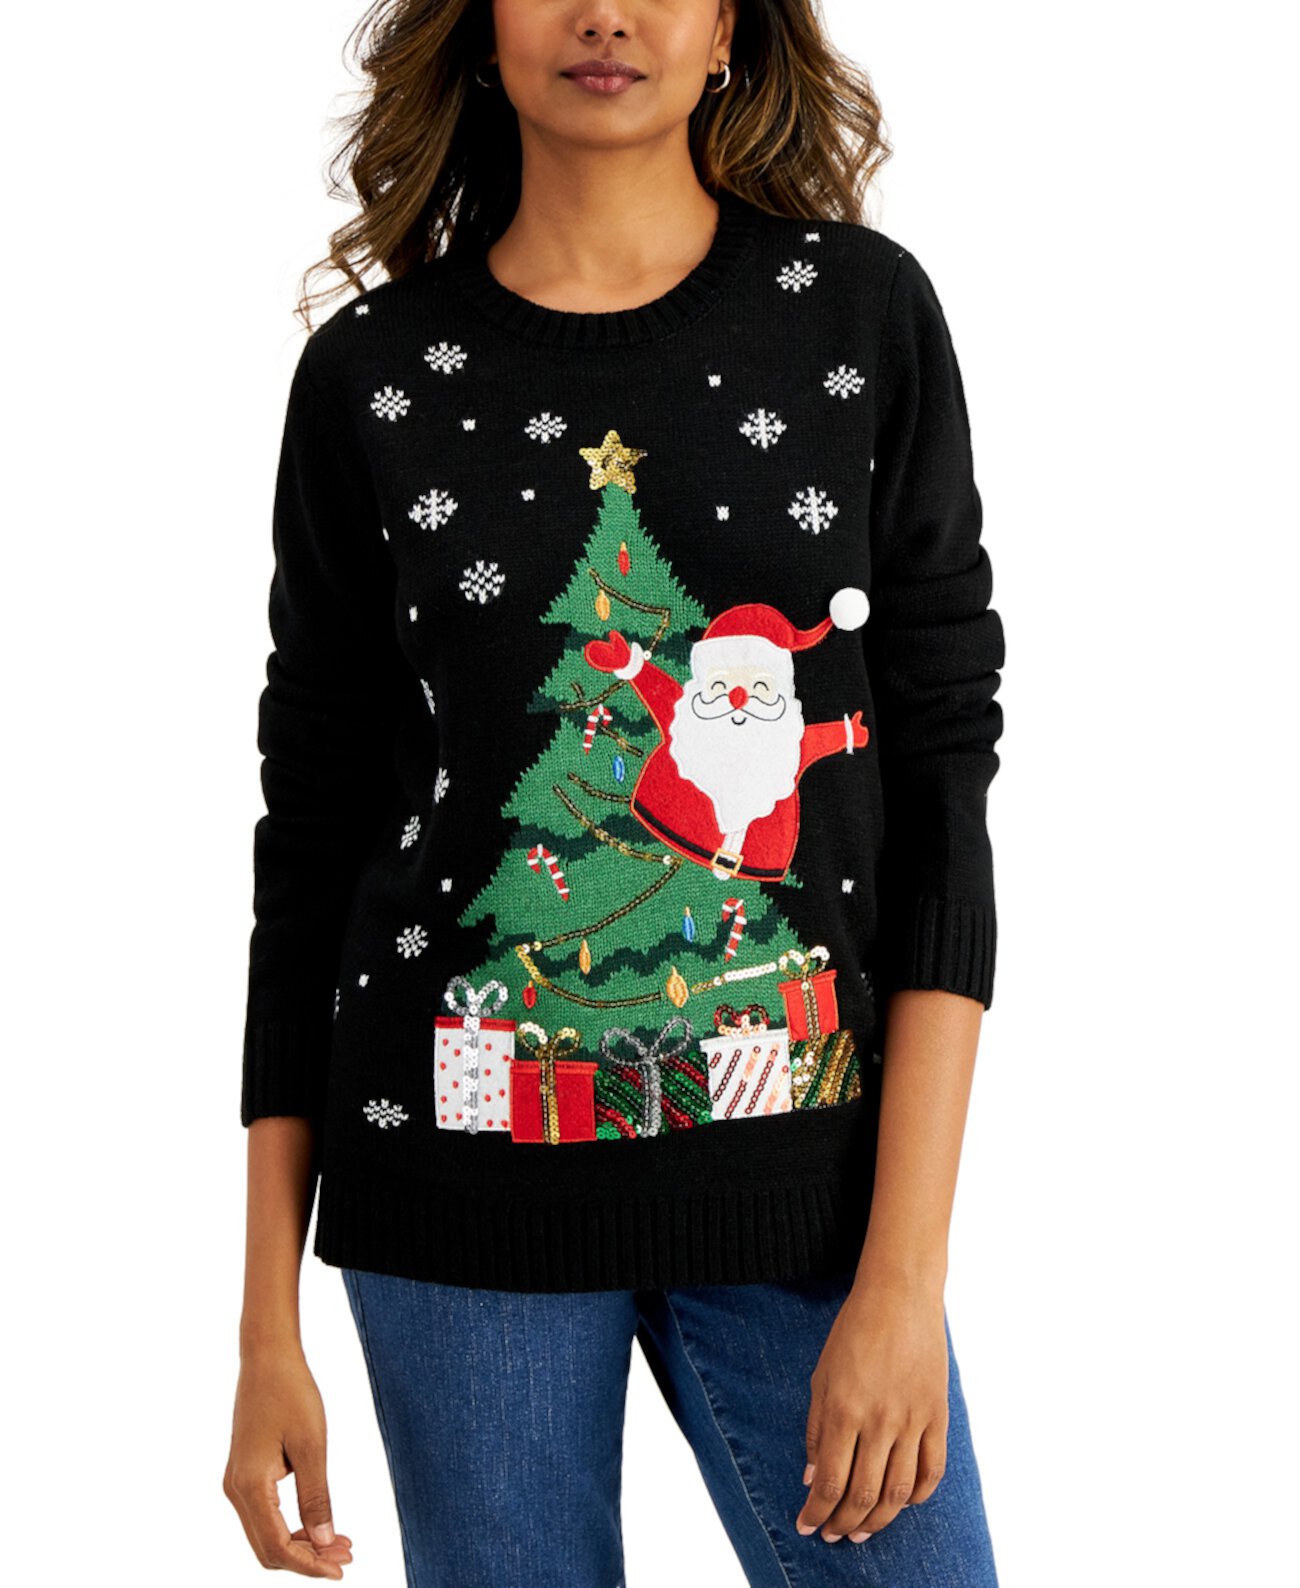 Украшенный свитер Санта-Клауса, созданный для Macy's Karen Scott